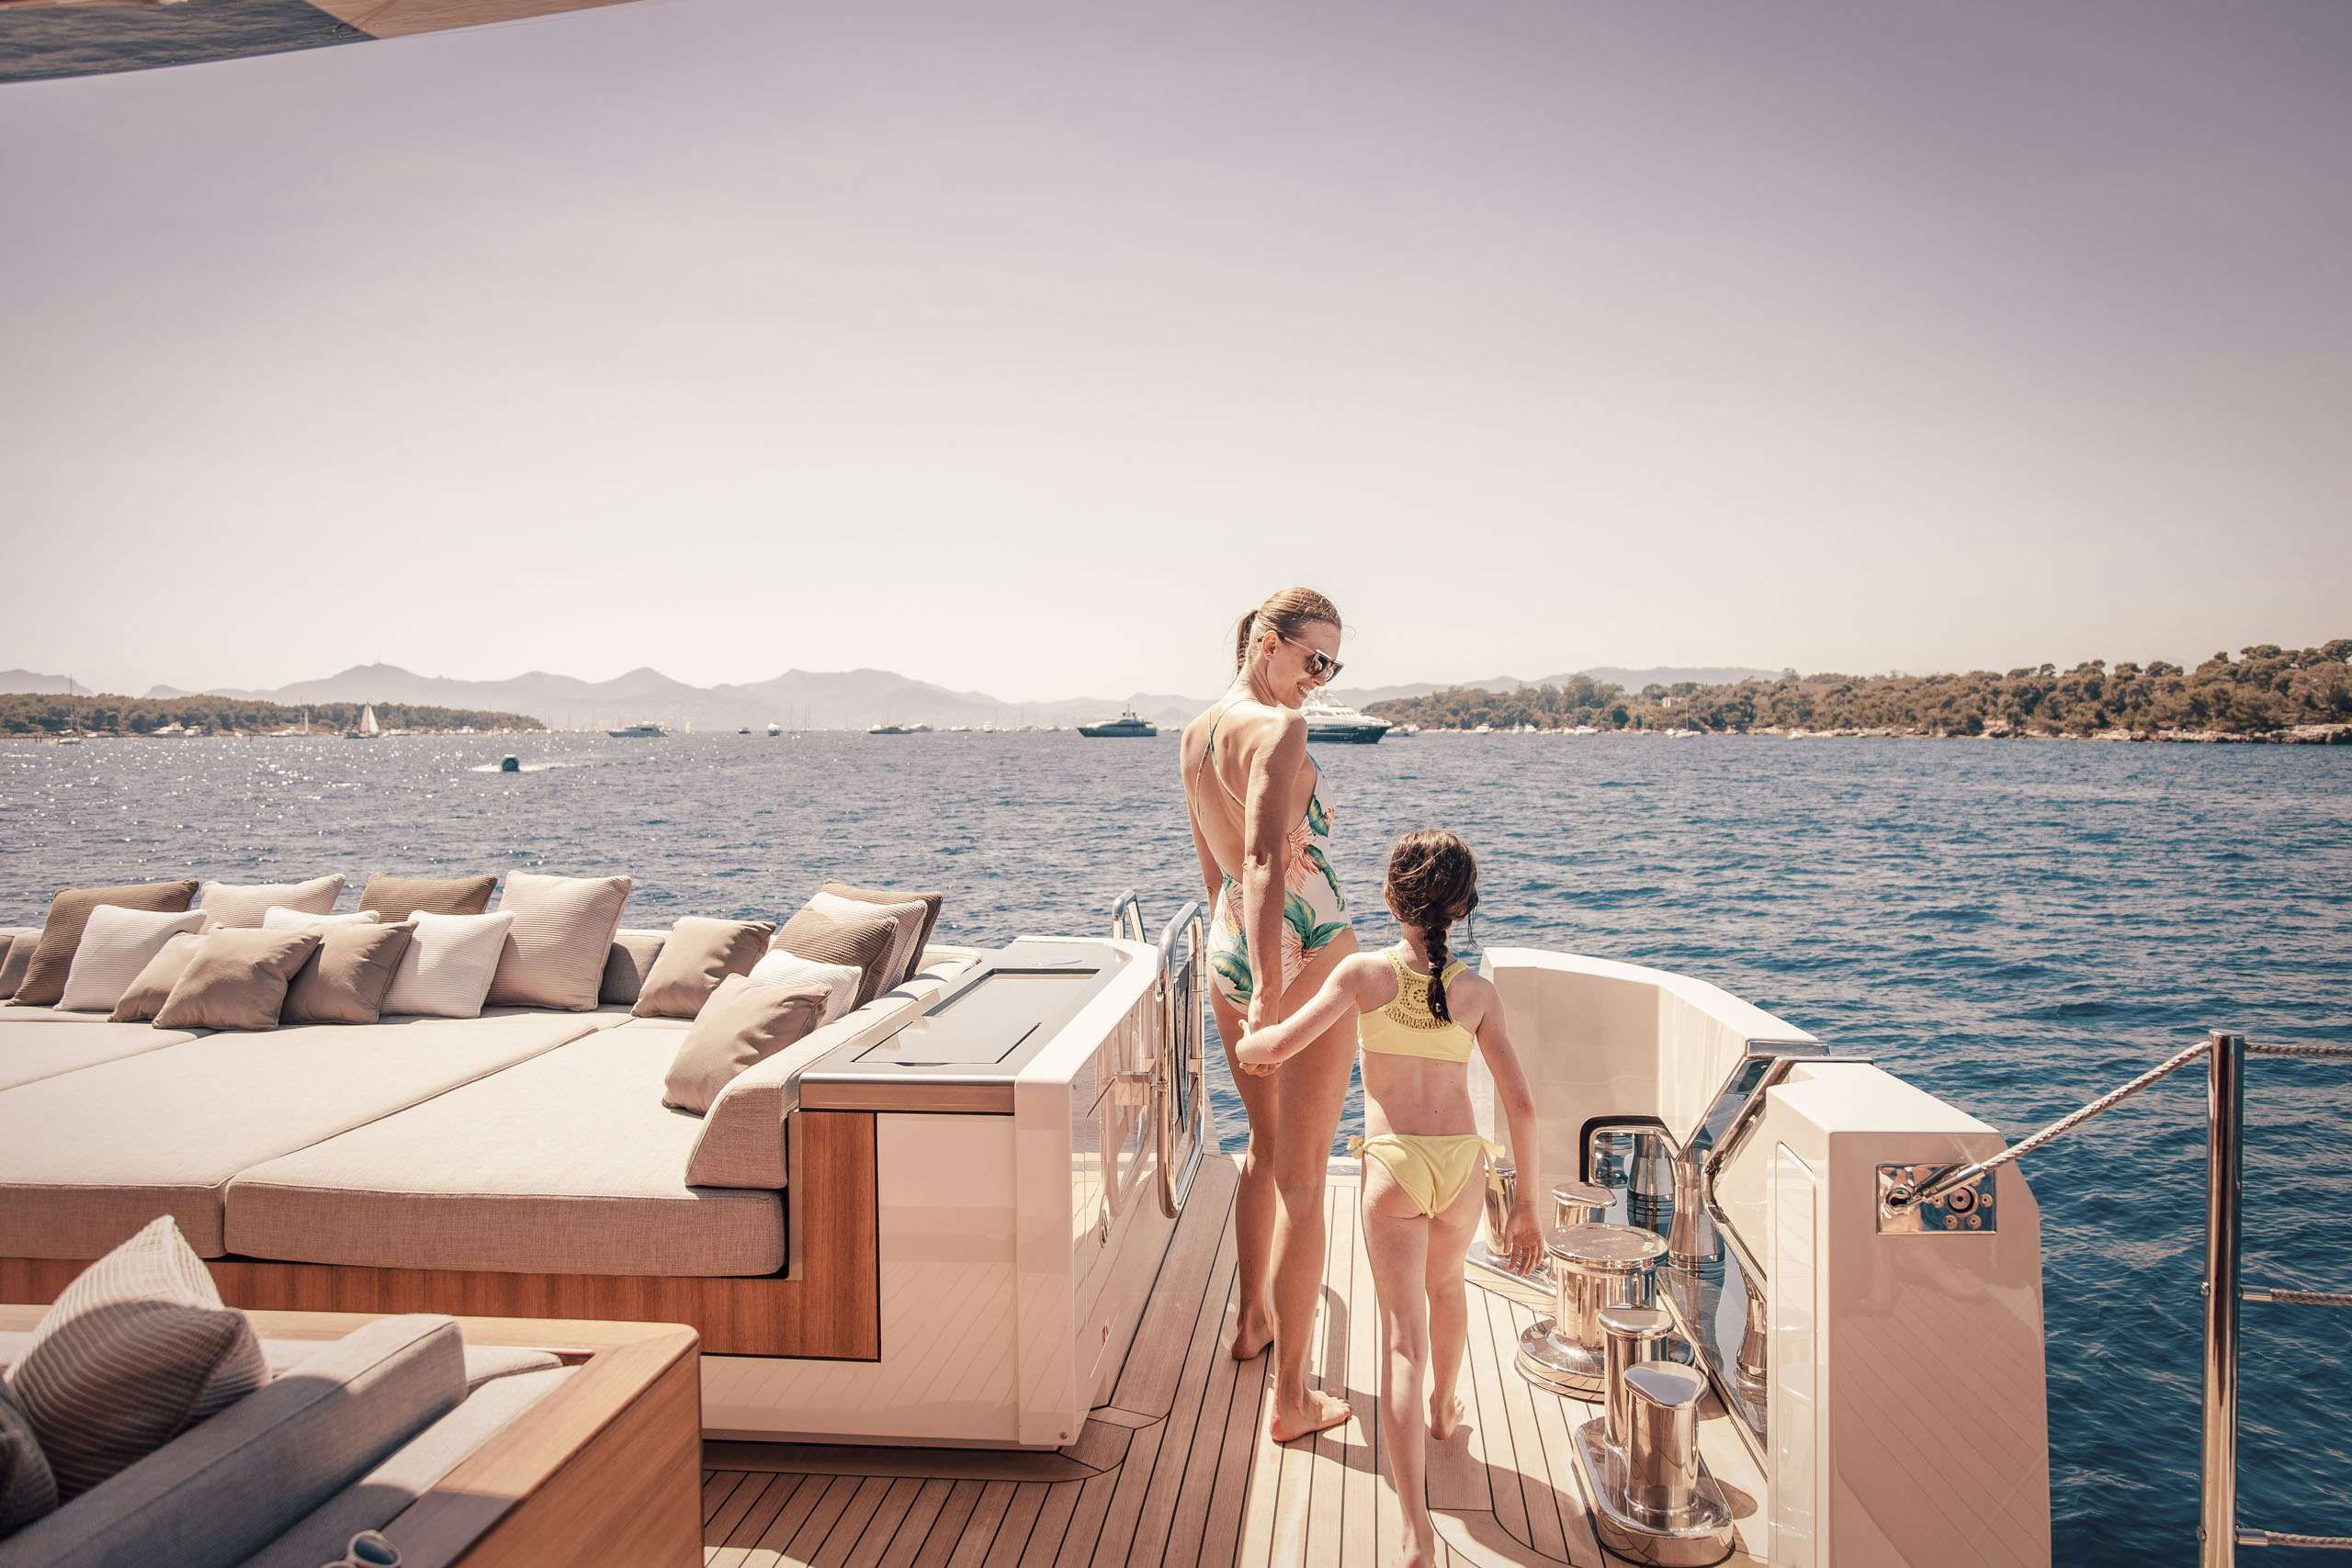 charter luxury yachts